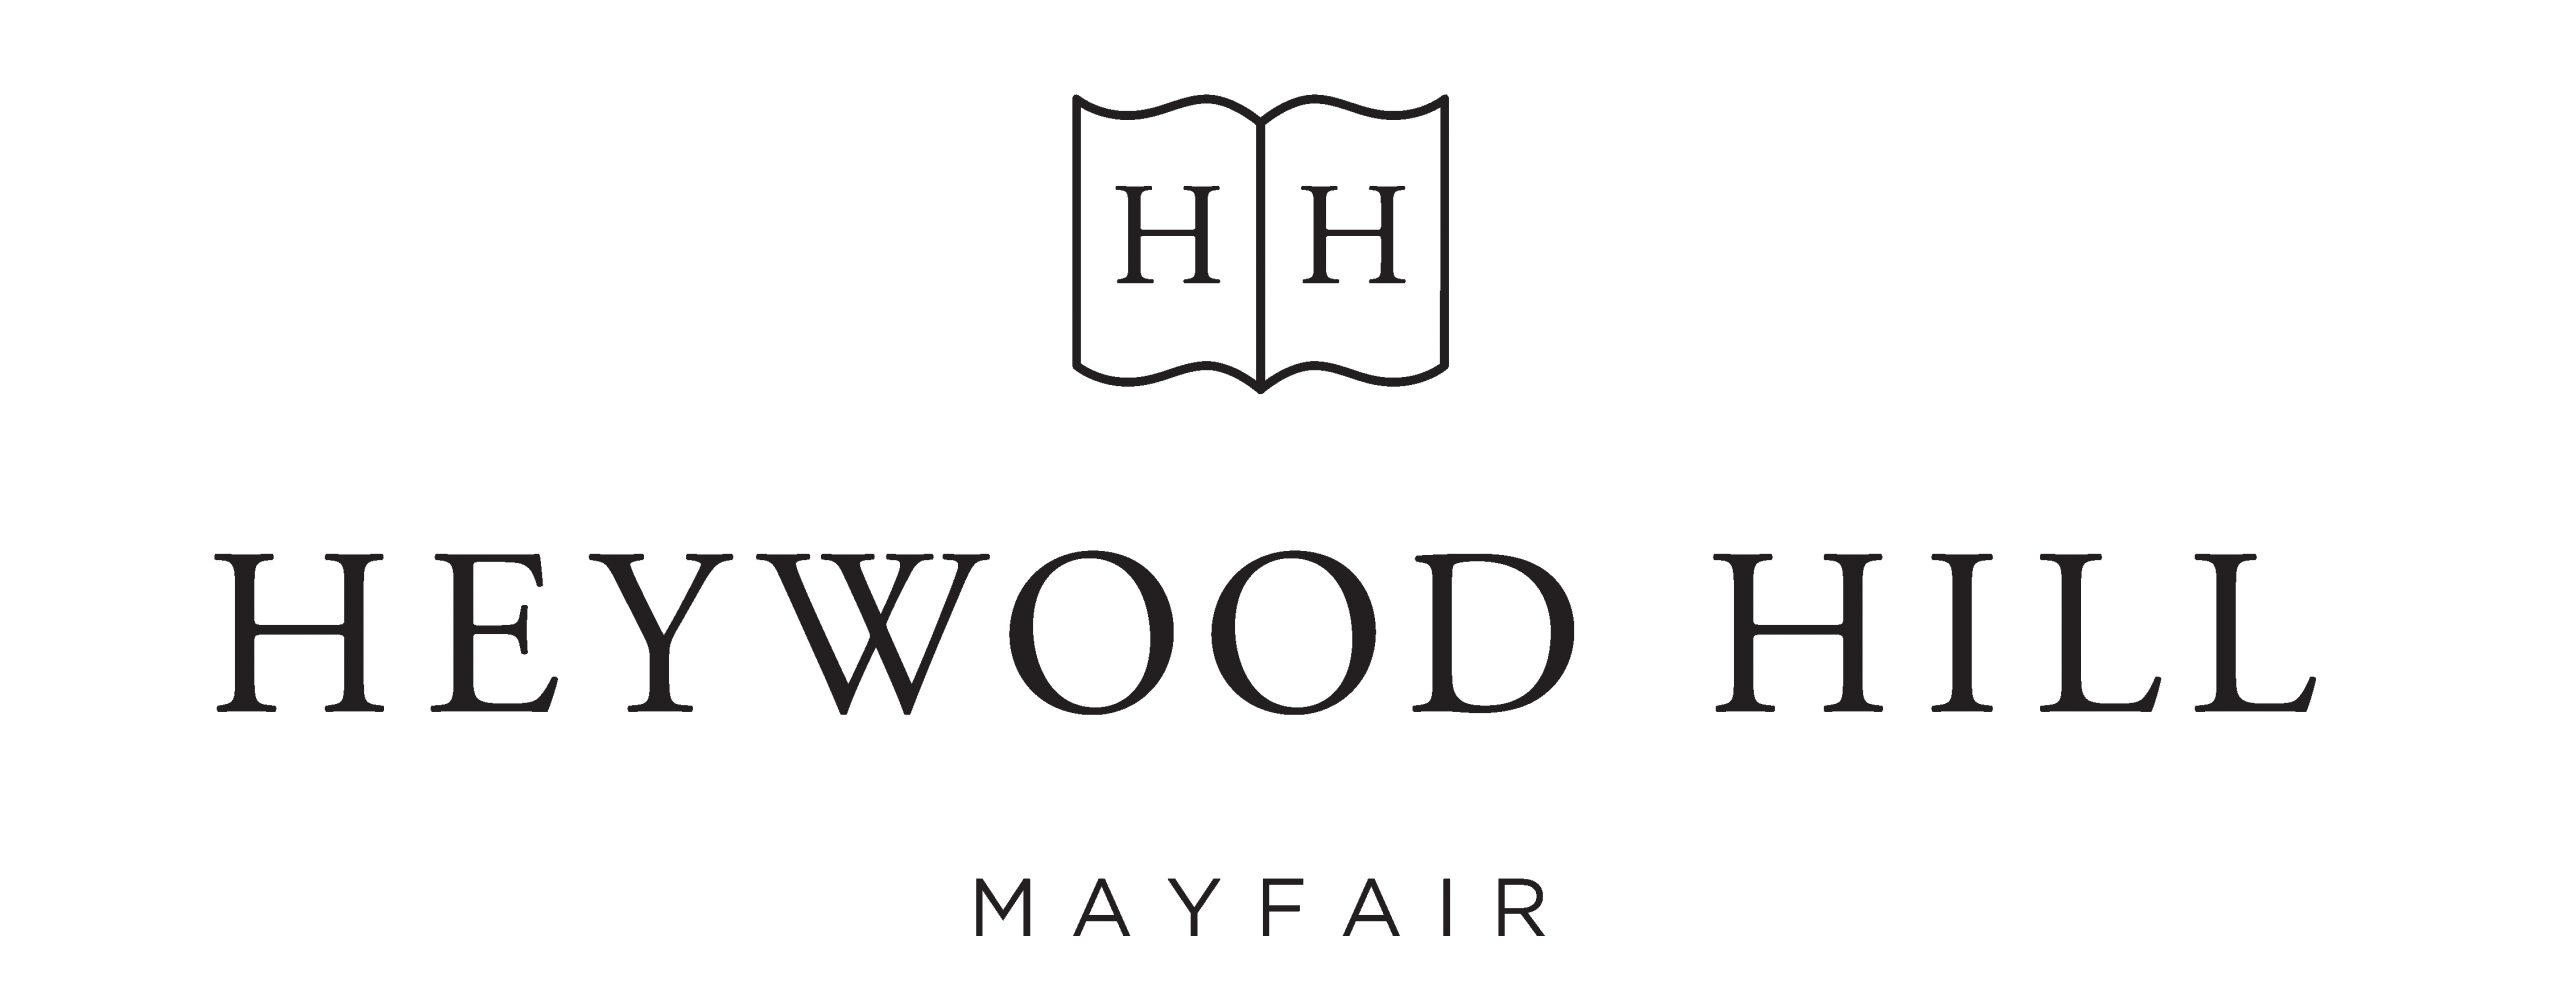 Heywood Hill Webinar